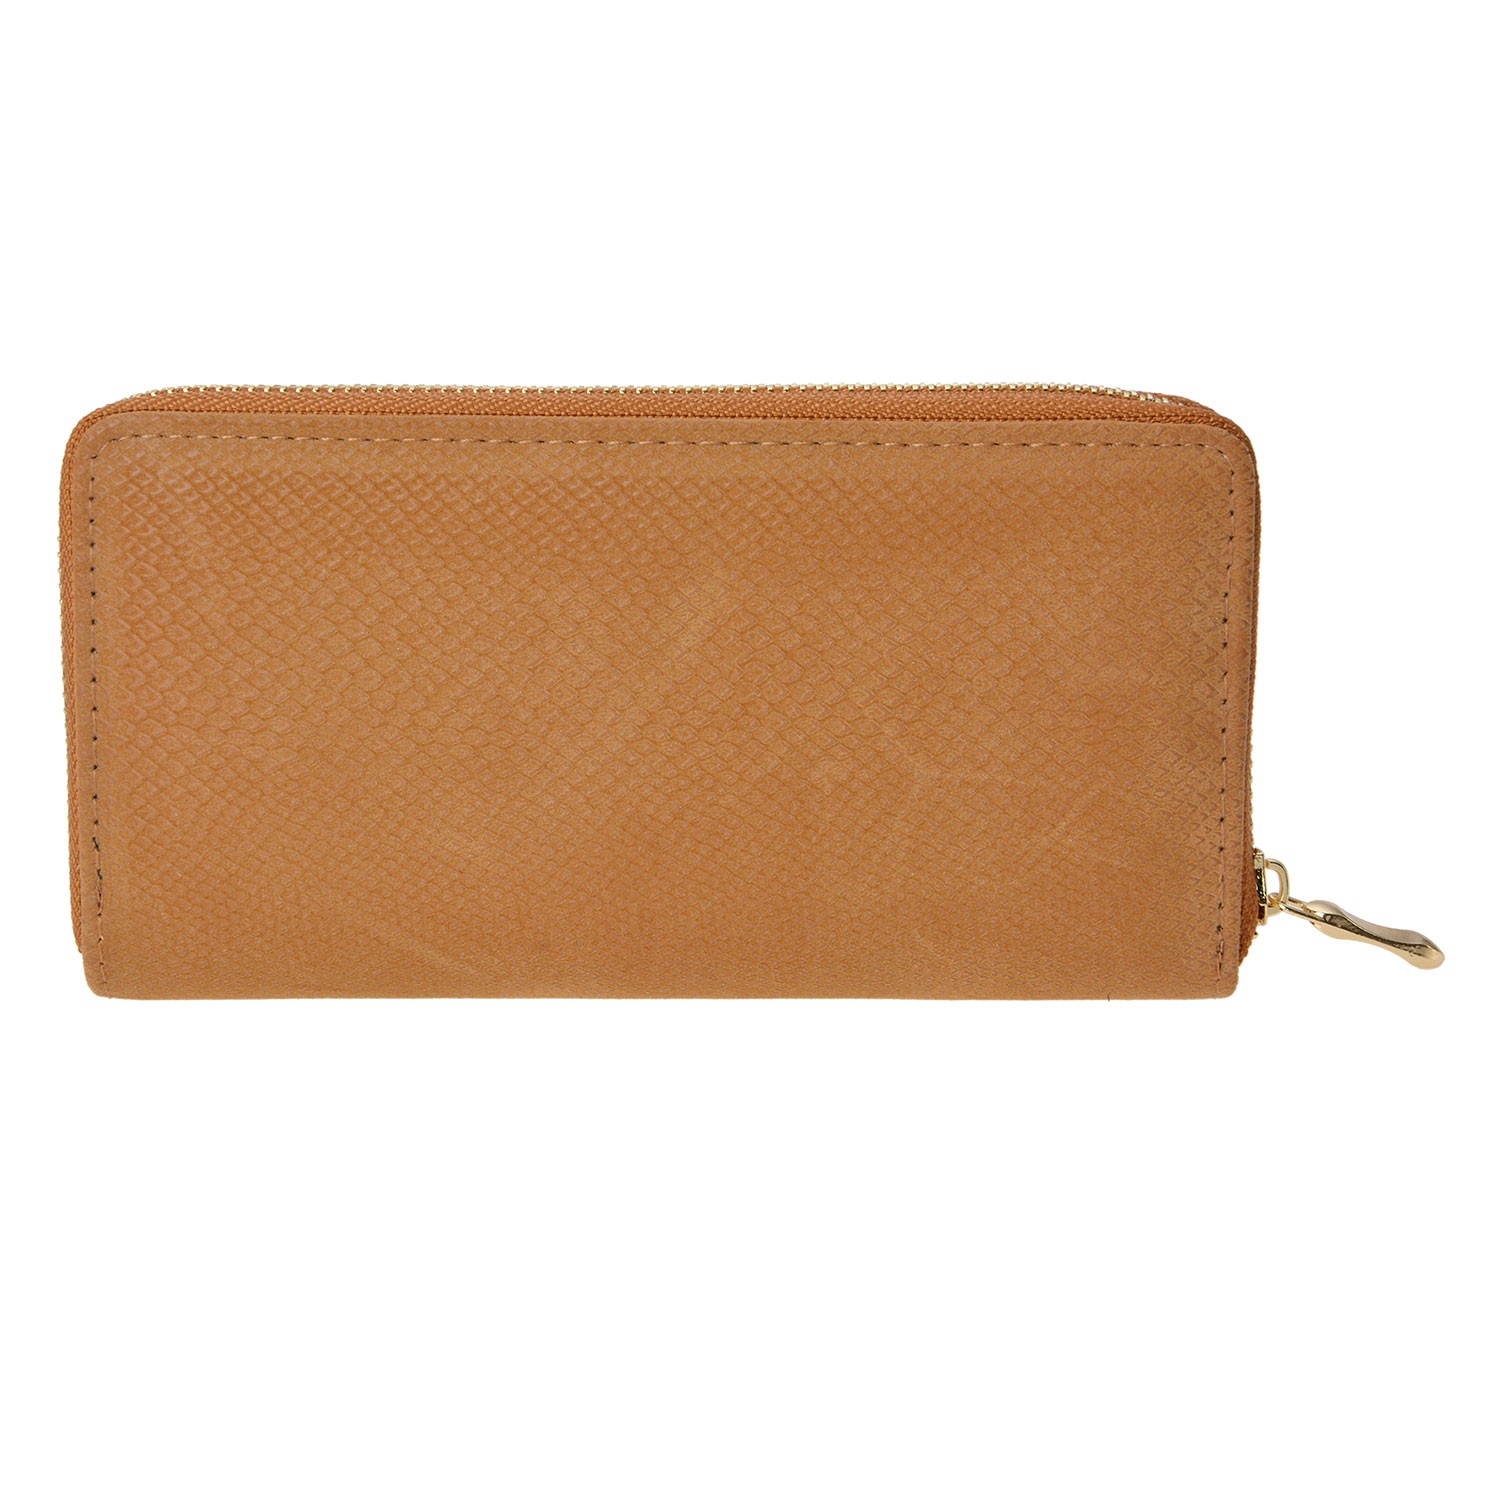 Okrová peněženka se vzorem - 19*10 cm Clayre & Eef